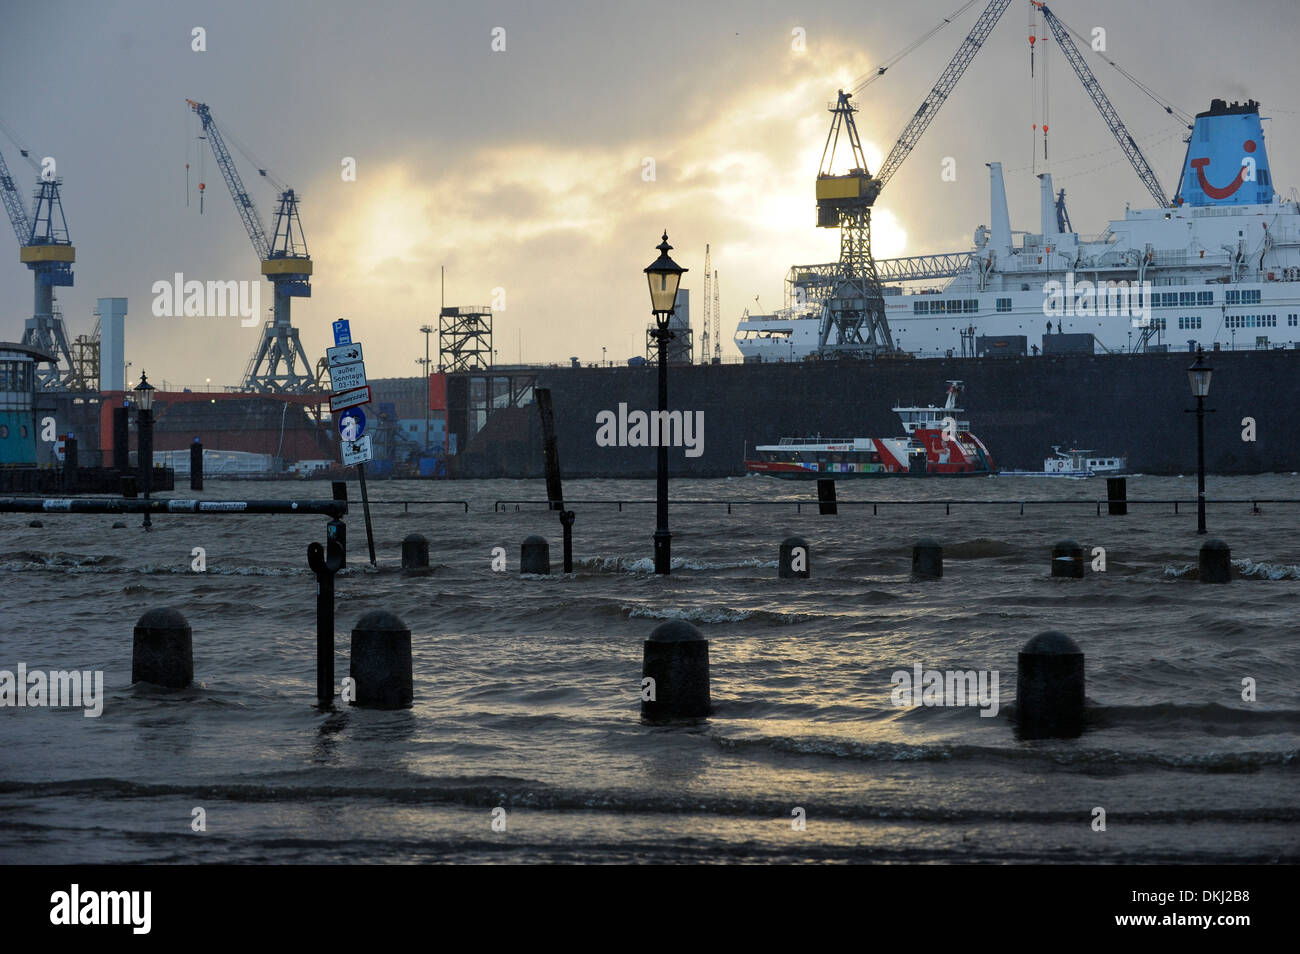 GERMANIA Amburgo, alluvione tempesta Xaver, alluvione sul fiume Elba, moli dei cantieri Blohm e Voss dal mercato del pesce nel 6.12.2013, molo galleggiante con nave da crociera di TUI Foto Stock